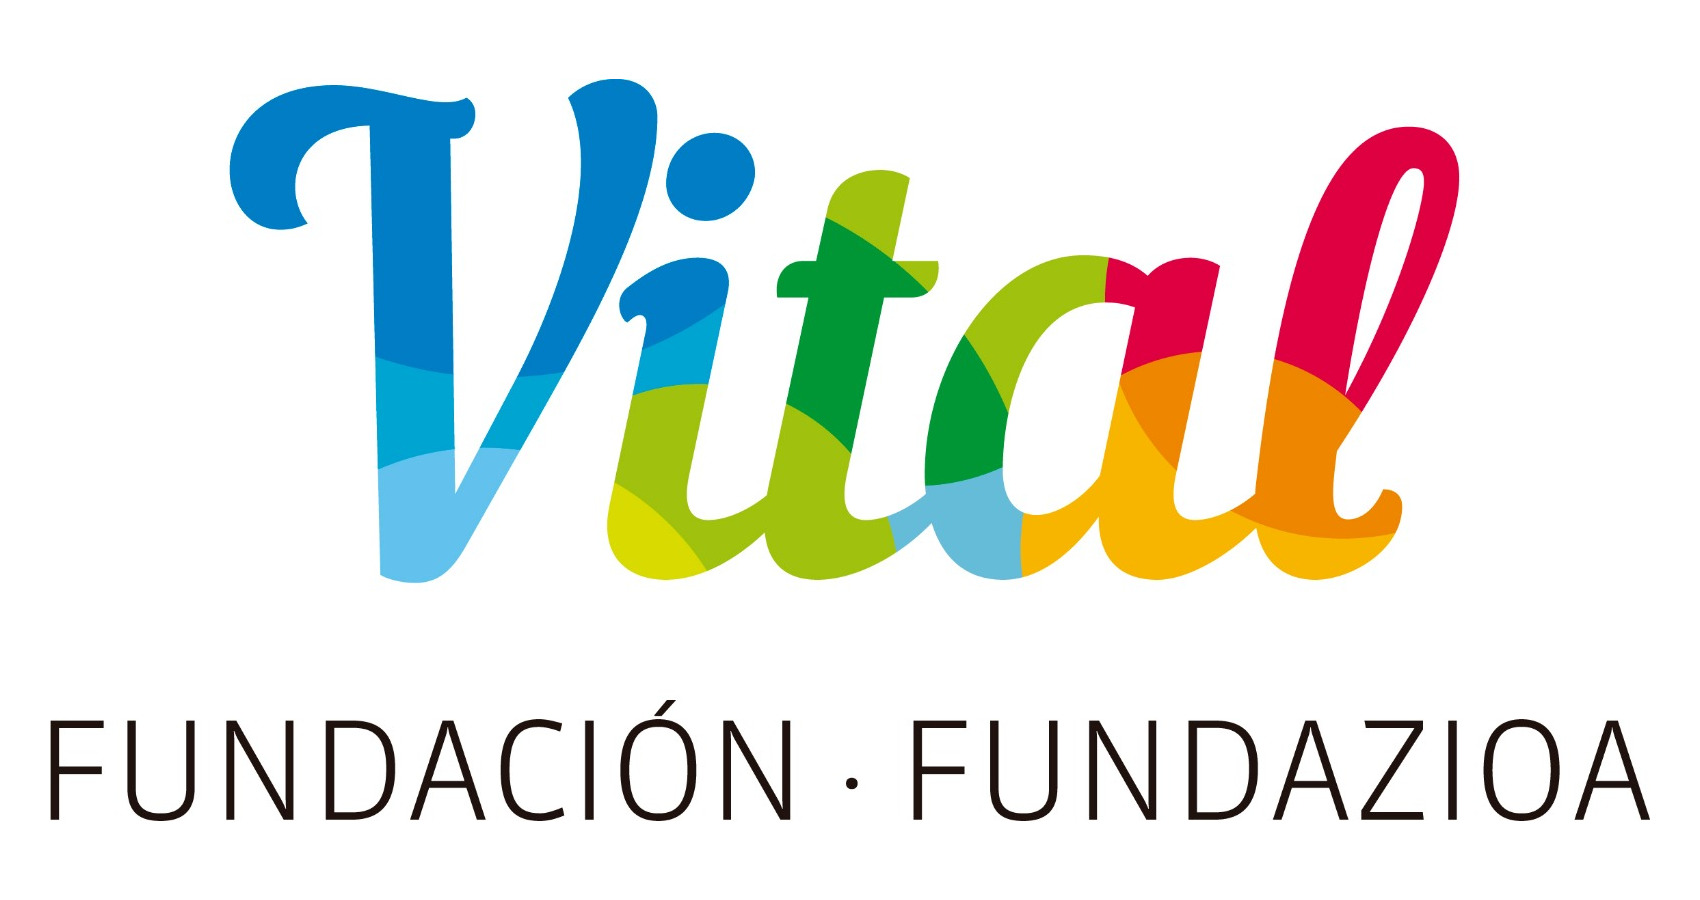 Fundación Vital